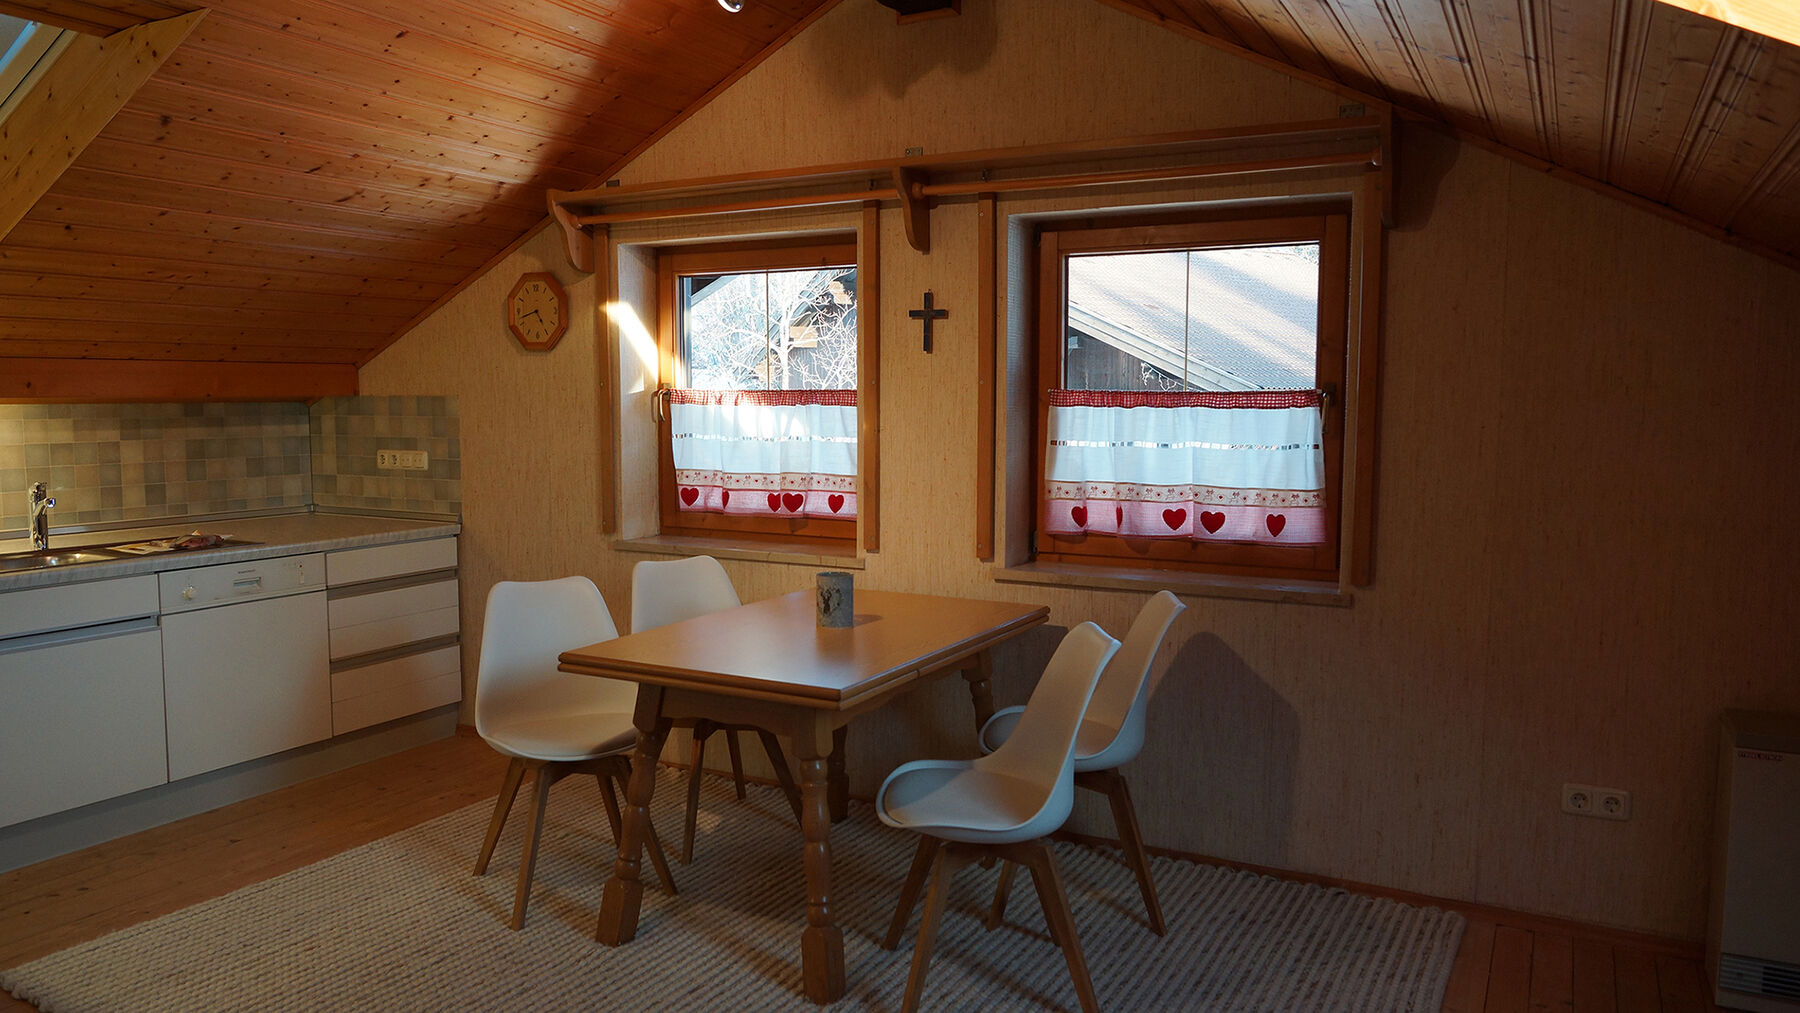 Esszimmer Dachgeschoss:Das Esszimmer im offenen Küchenbereich bietet ausreichend Platz für 4 Personen und lädt zum gemütlichen Verweilen ein.